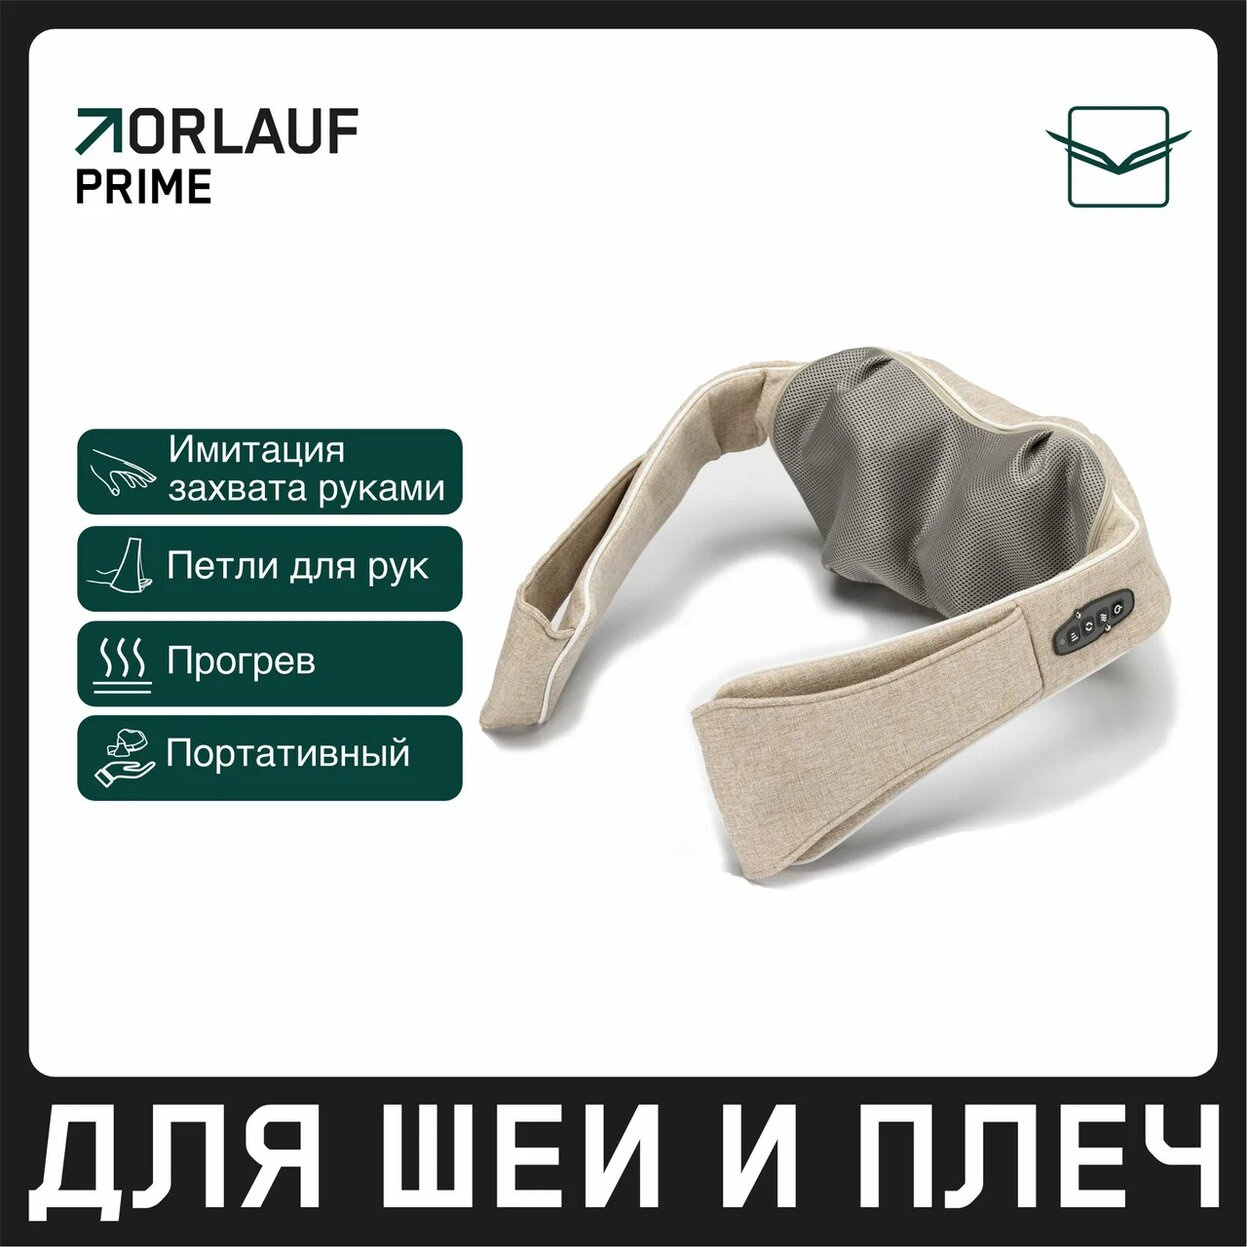 Orlauf Prime из каталога портативных массажеров в Москве по цене 11900 ₽